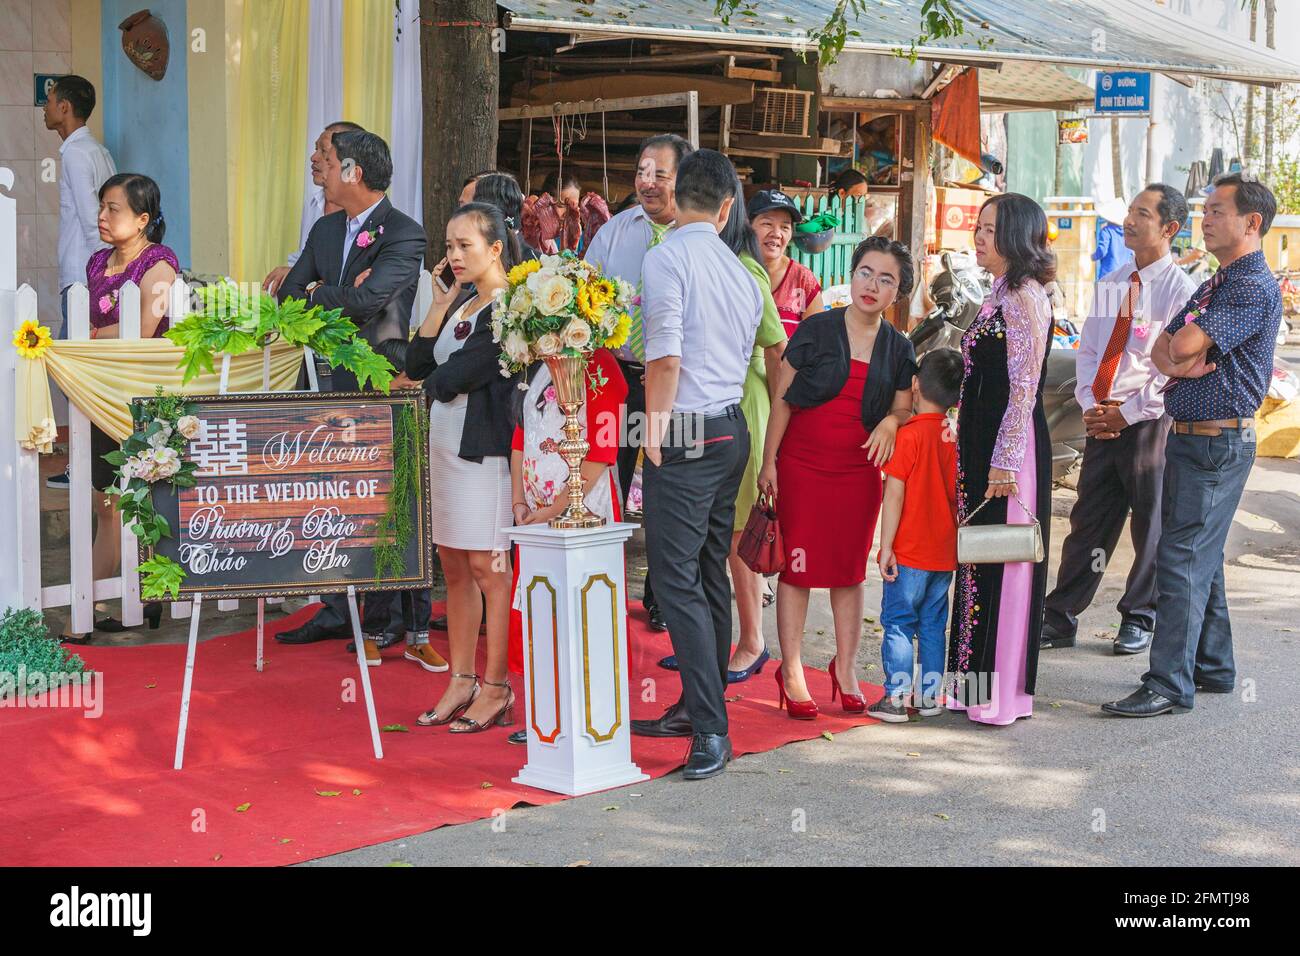 Invitados vietnamitas de boda haciendo cola para entrar a la recepción de la boda en la calle, Hoi An, Vietnam Foto de stock